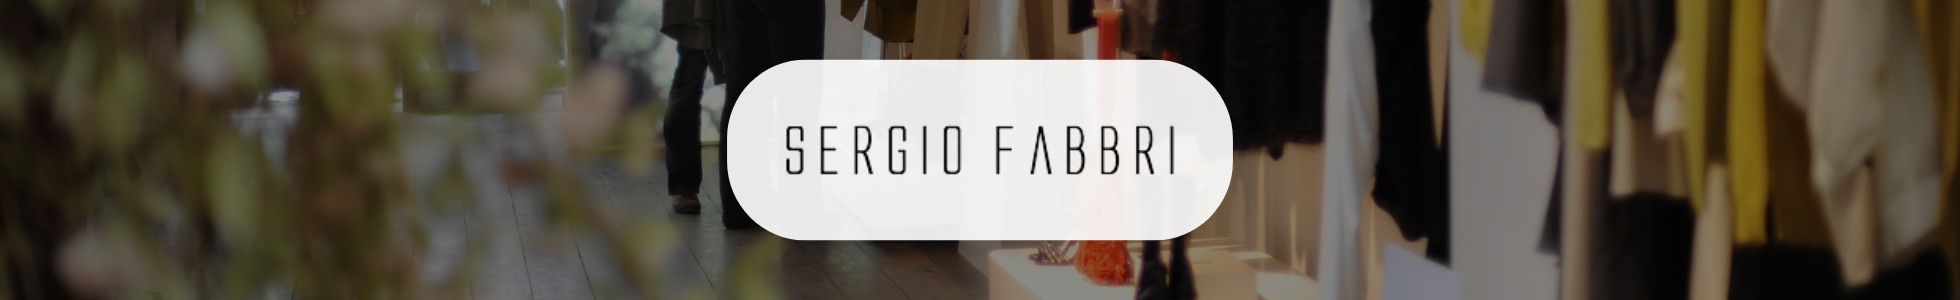 Sergio Fabbri - Shop online calzature abbigliamento ed accessori